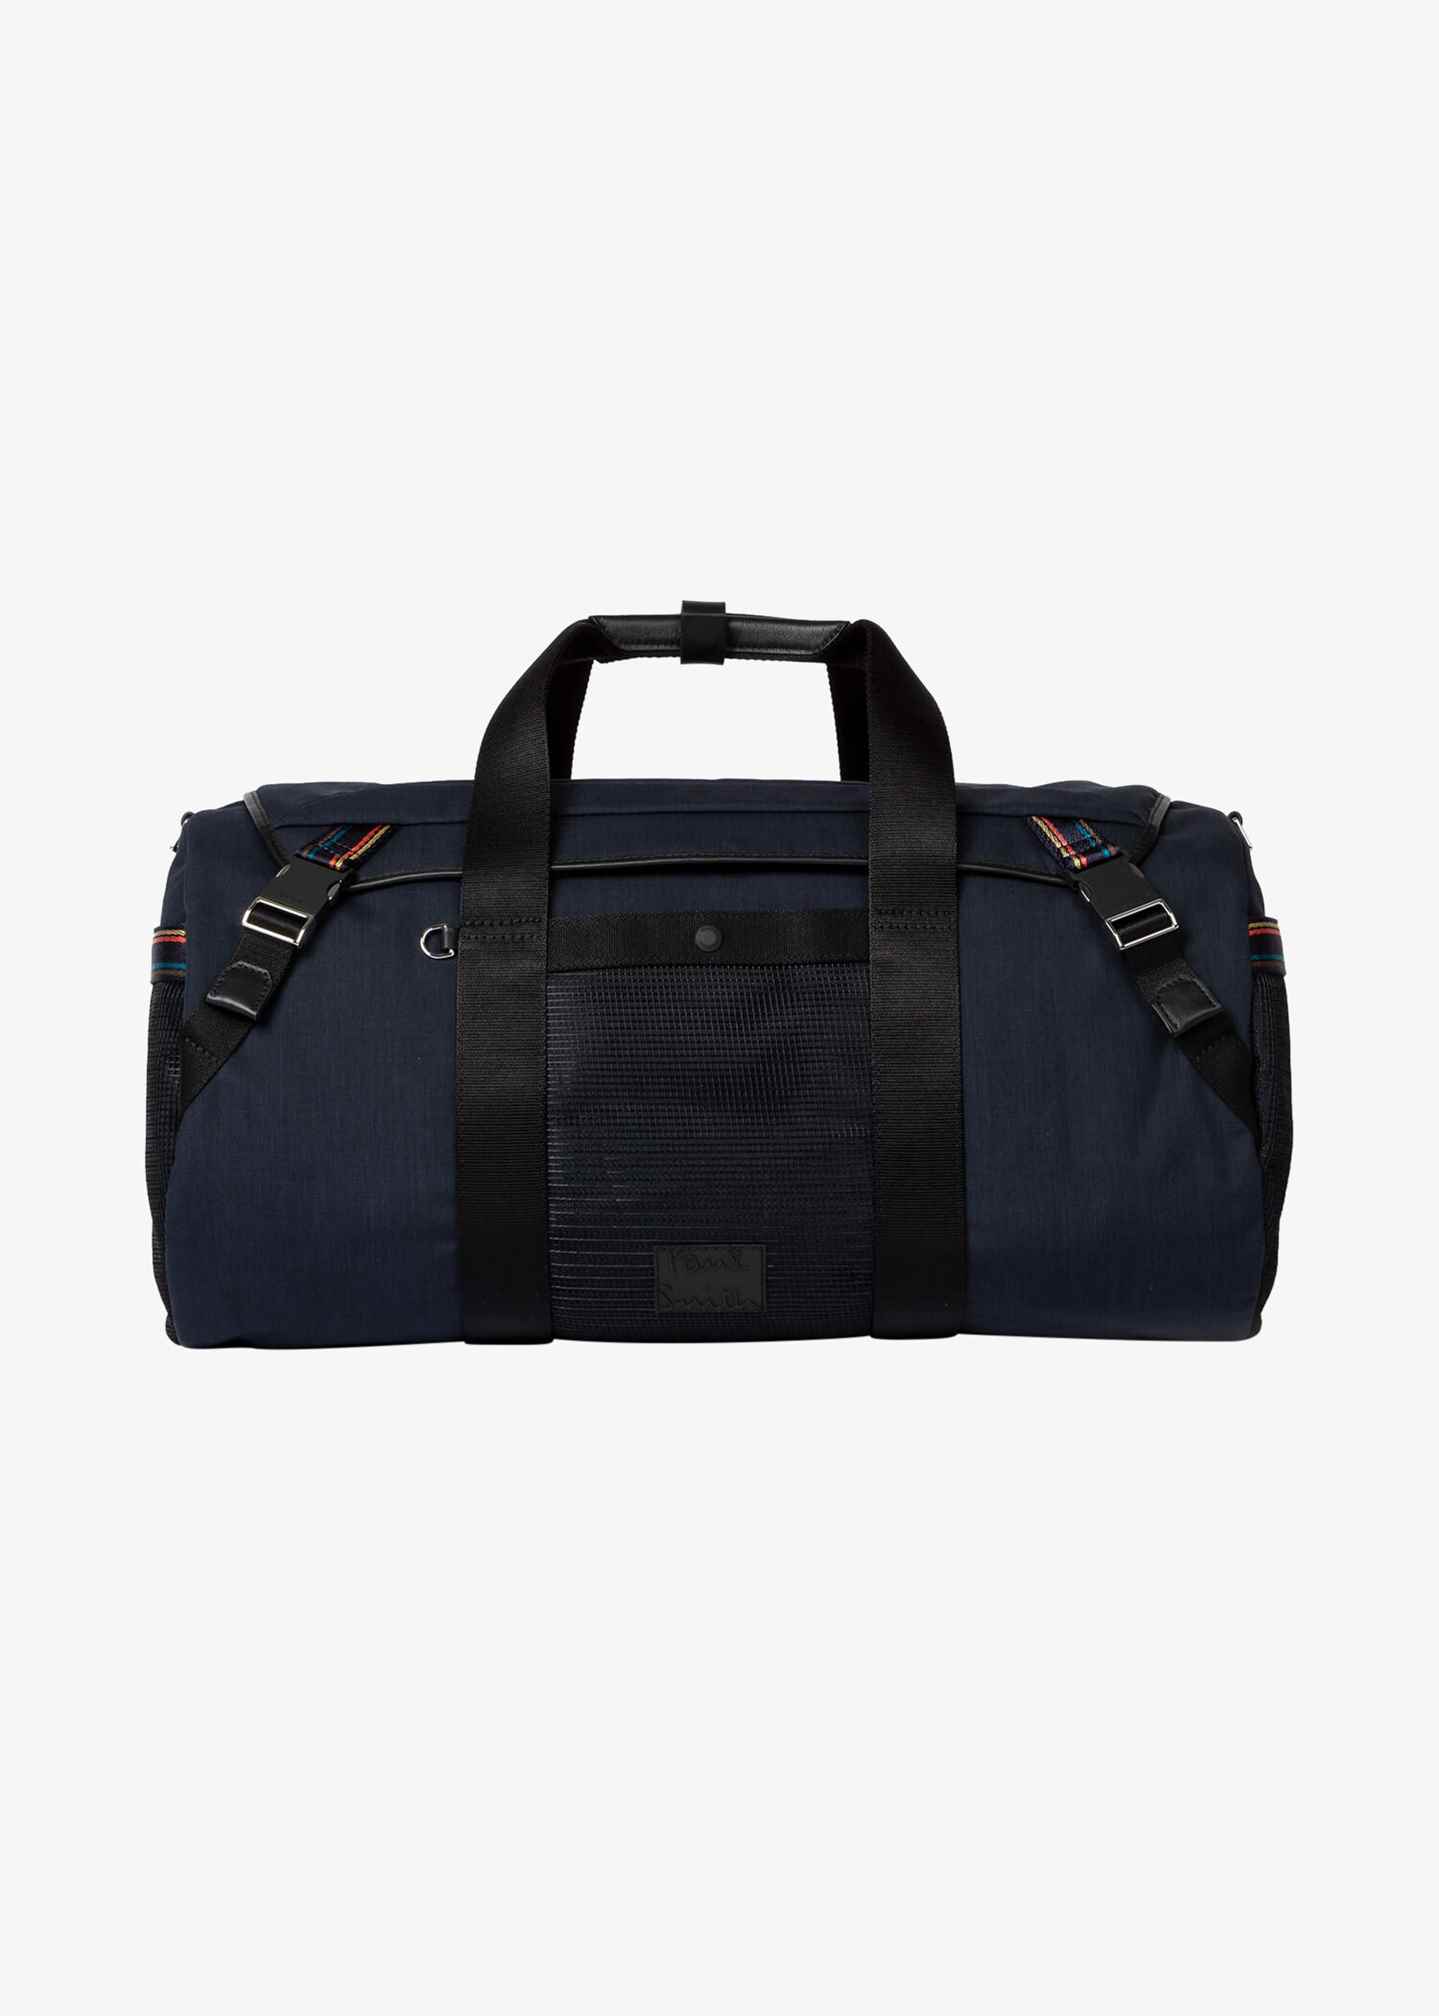 Taschen Reisegepäck Reisetaschen Burberry Leather Travel Bag 